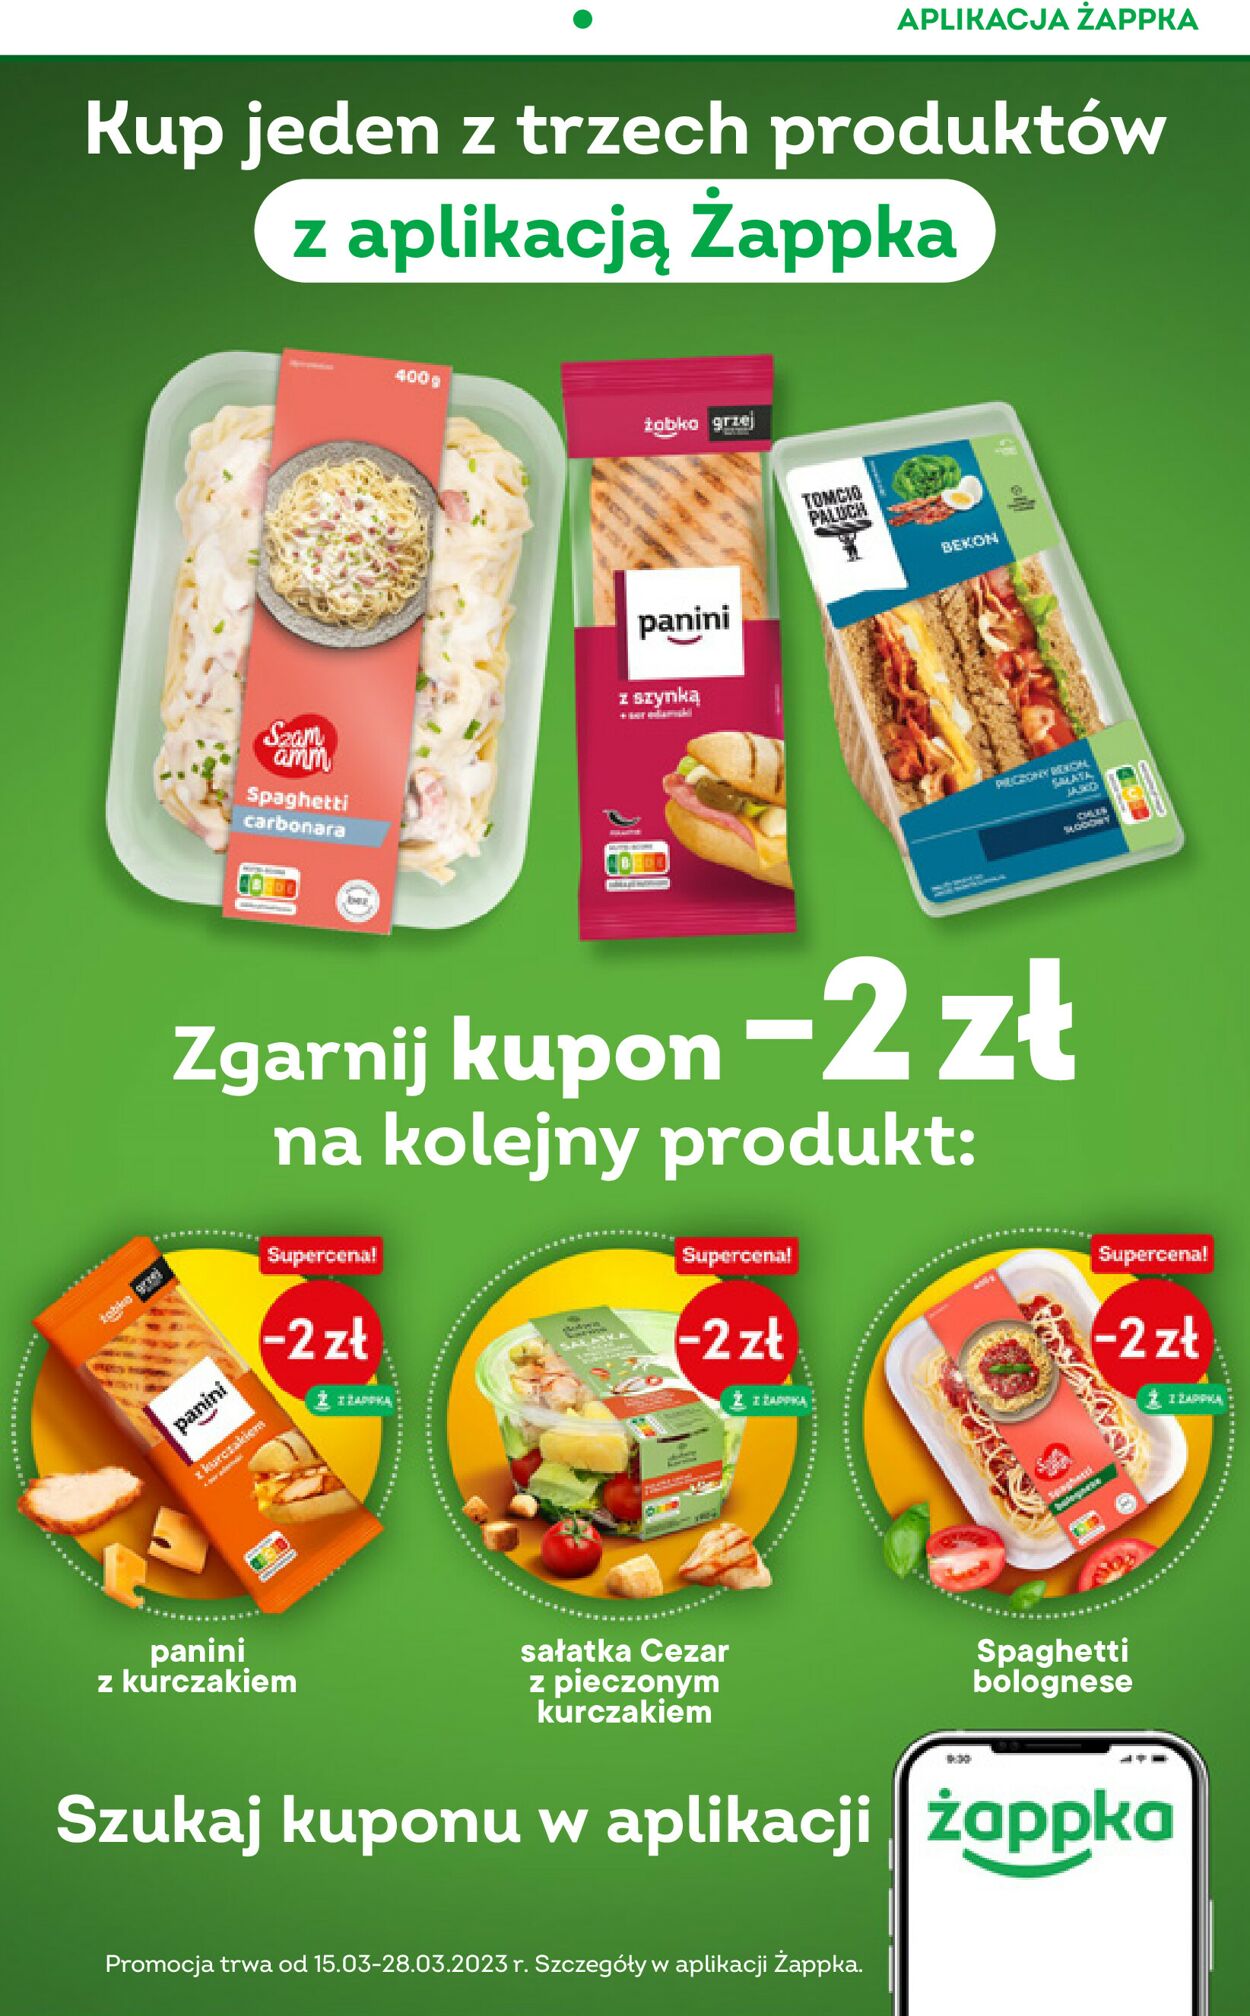 Fresh market Gazetka od 15.03.2023